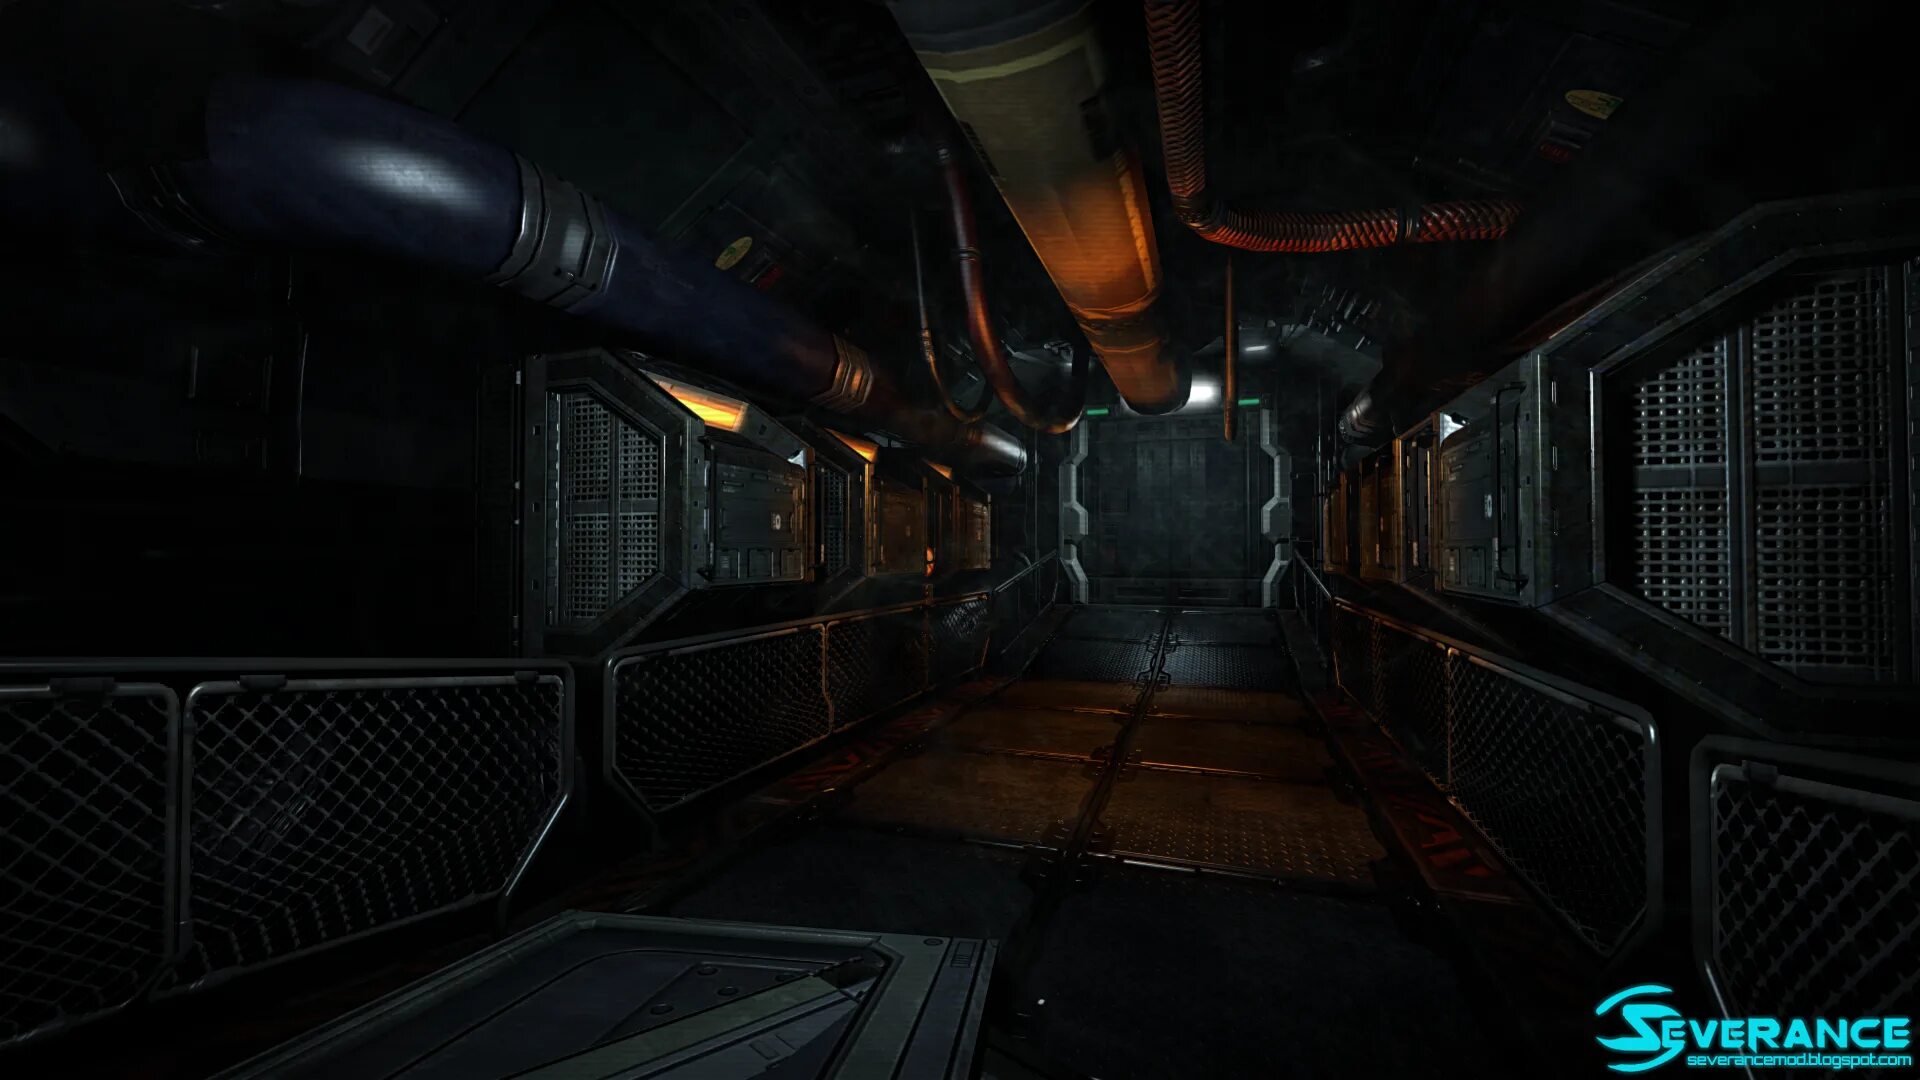 Doom 3 Corridor. Doom 3 коридоры. Doom 3 Remastered на Unreal engine 4. Дум 3 коридоры токамака.